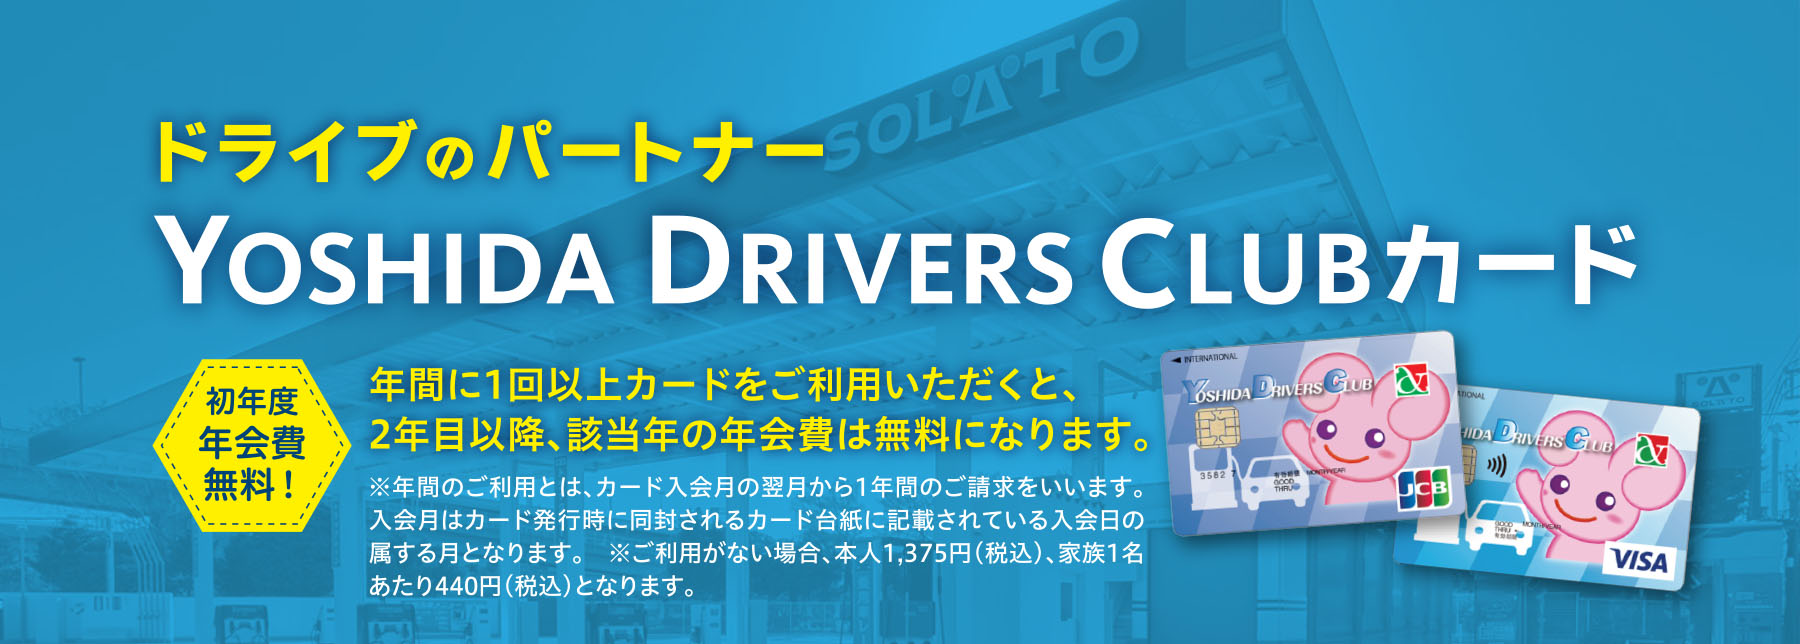 ドライブのパートナーYOSHIDA DRIVERS CLUBカード 初年度
年会費無料！年間に1回以上カードをご利用いただくと、2年目以降、該当年の年会費は無料になります。